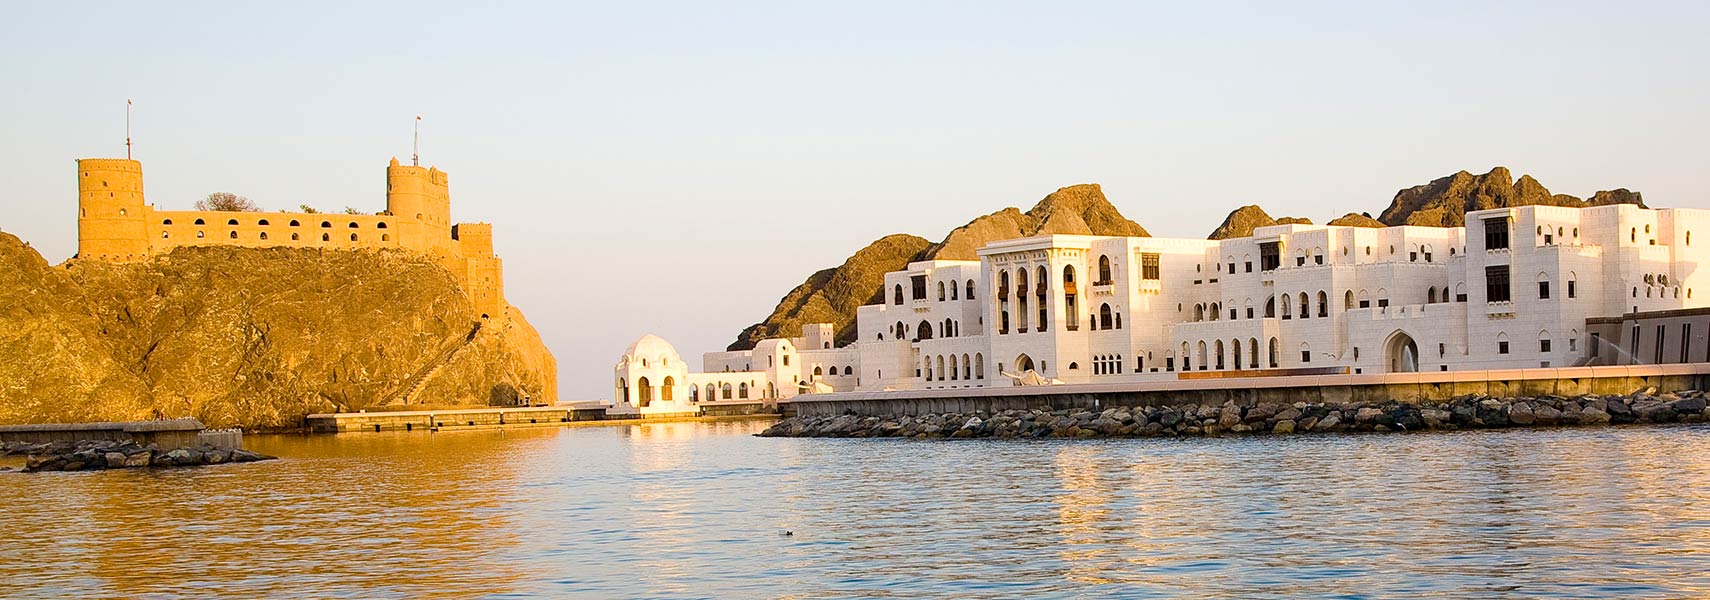 Fort al-Jalali, Old Muscat, Oman